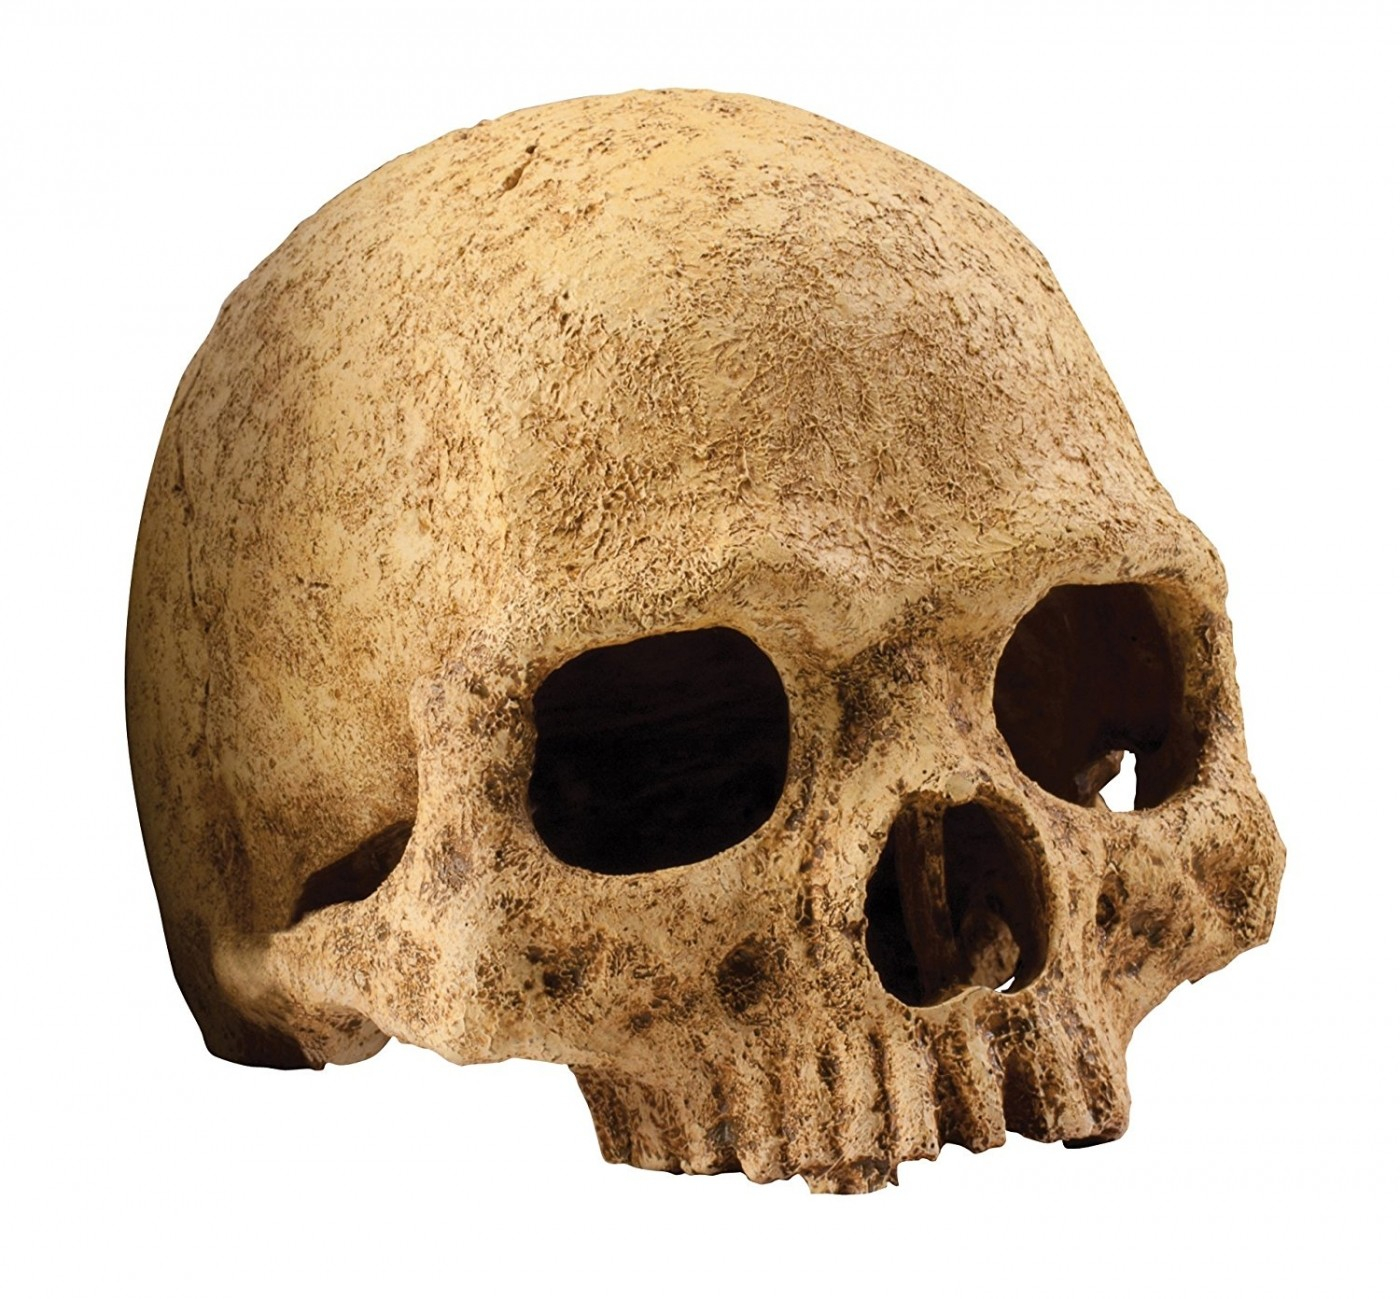 Decoración cráneo de primate Exo Terra